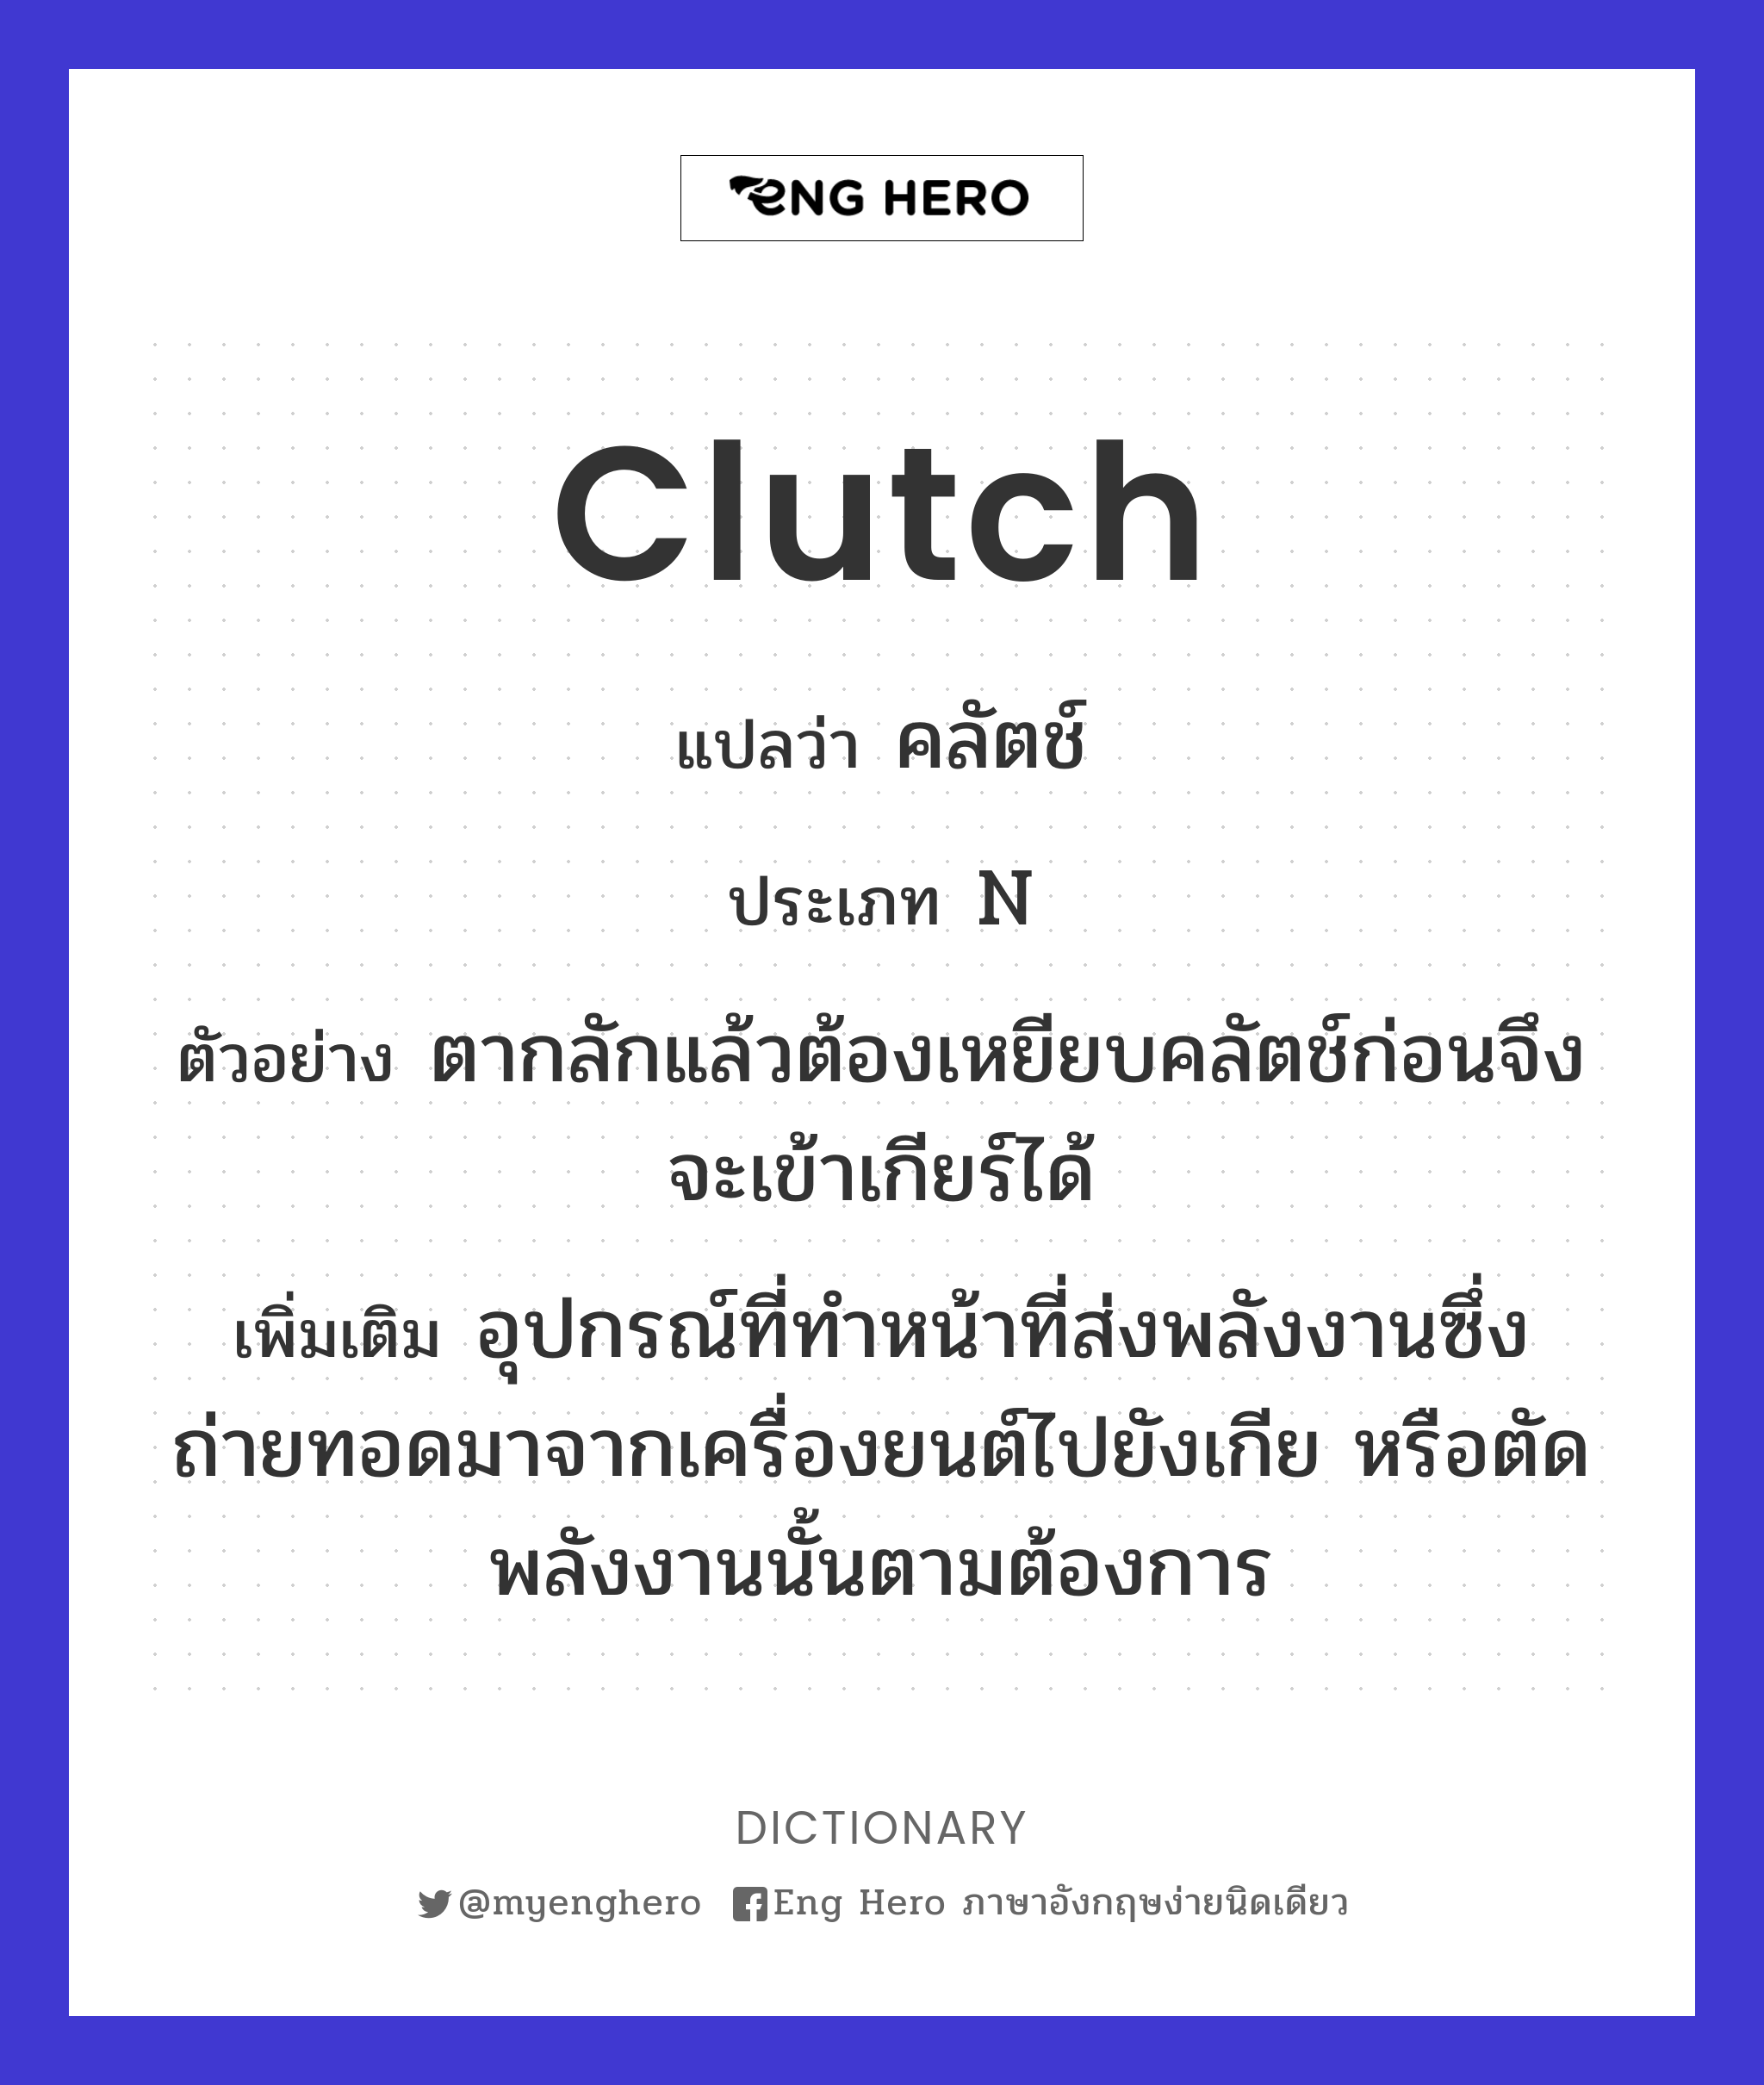 clutch